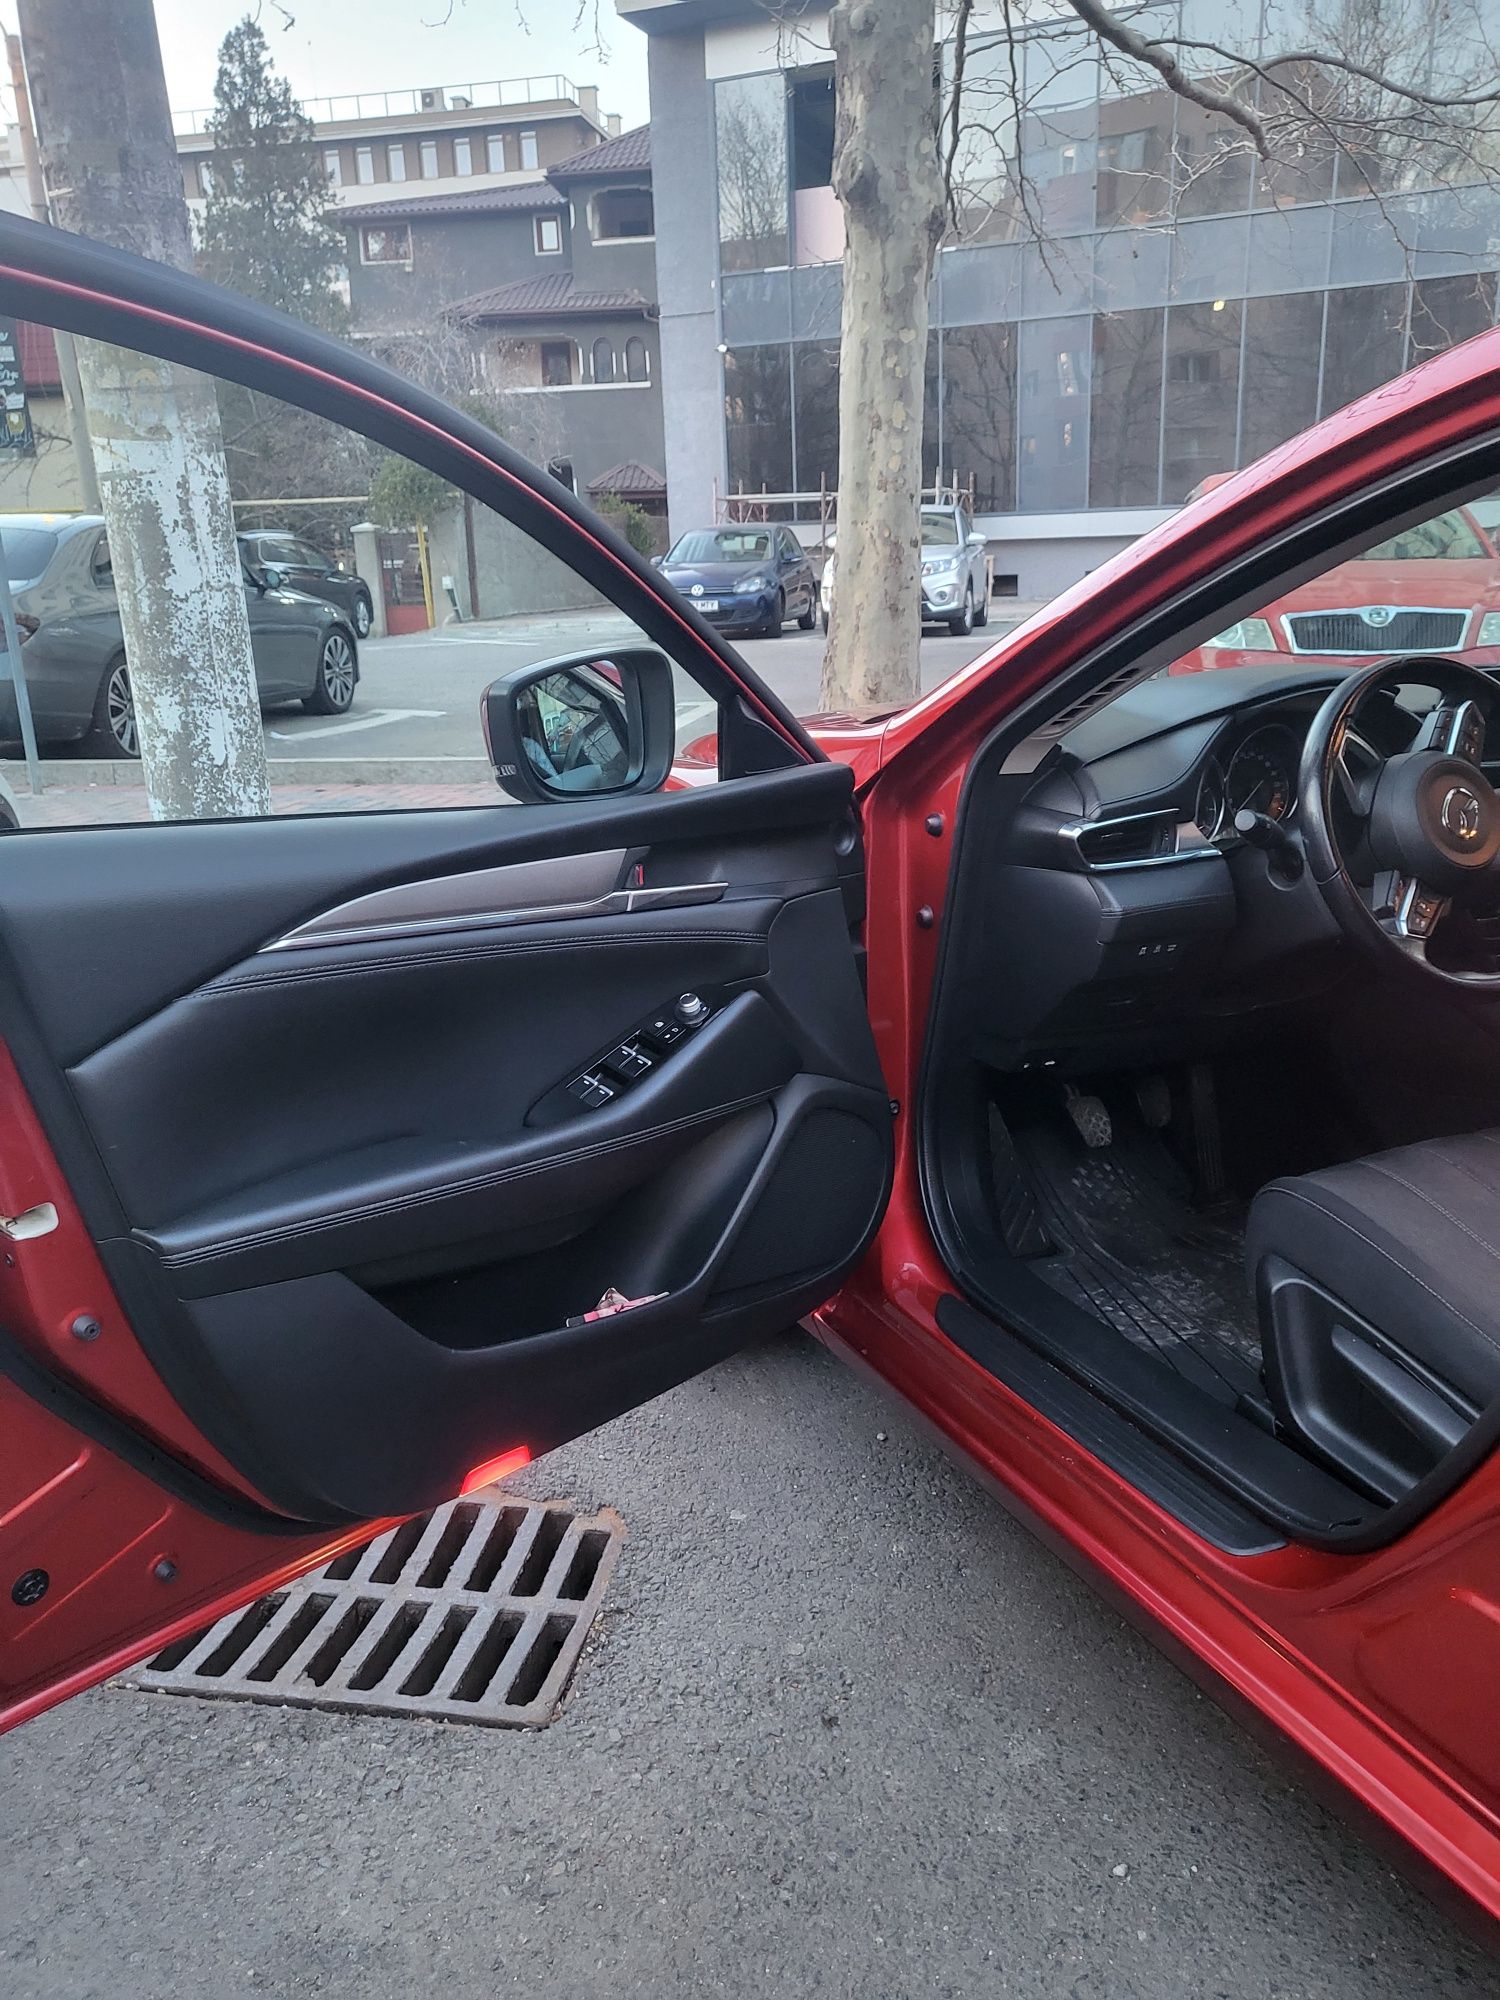 Mazda 6, Rosu Cristal,  Made in Japan, Prima înmatriculare 2019,